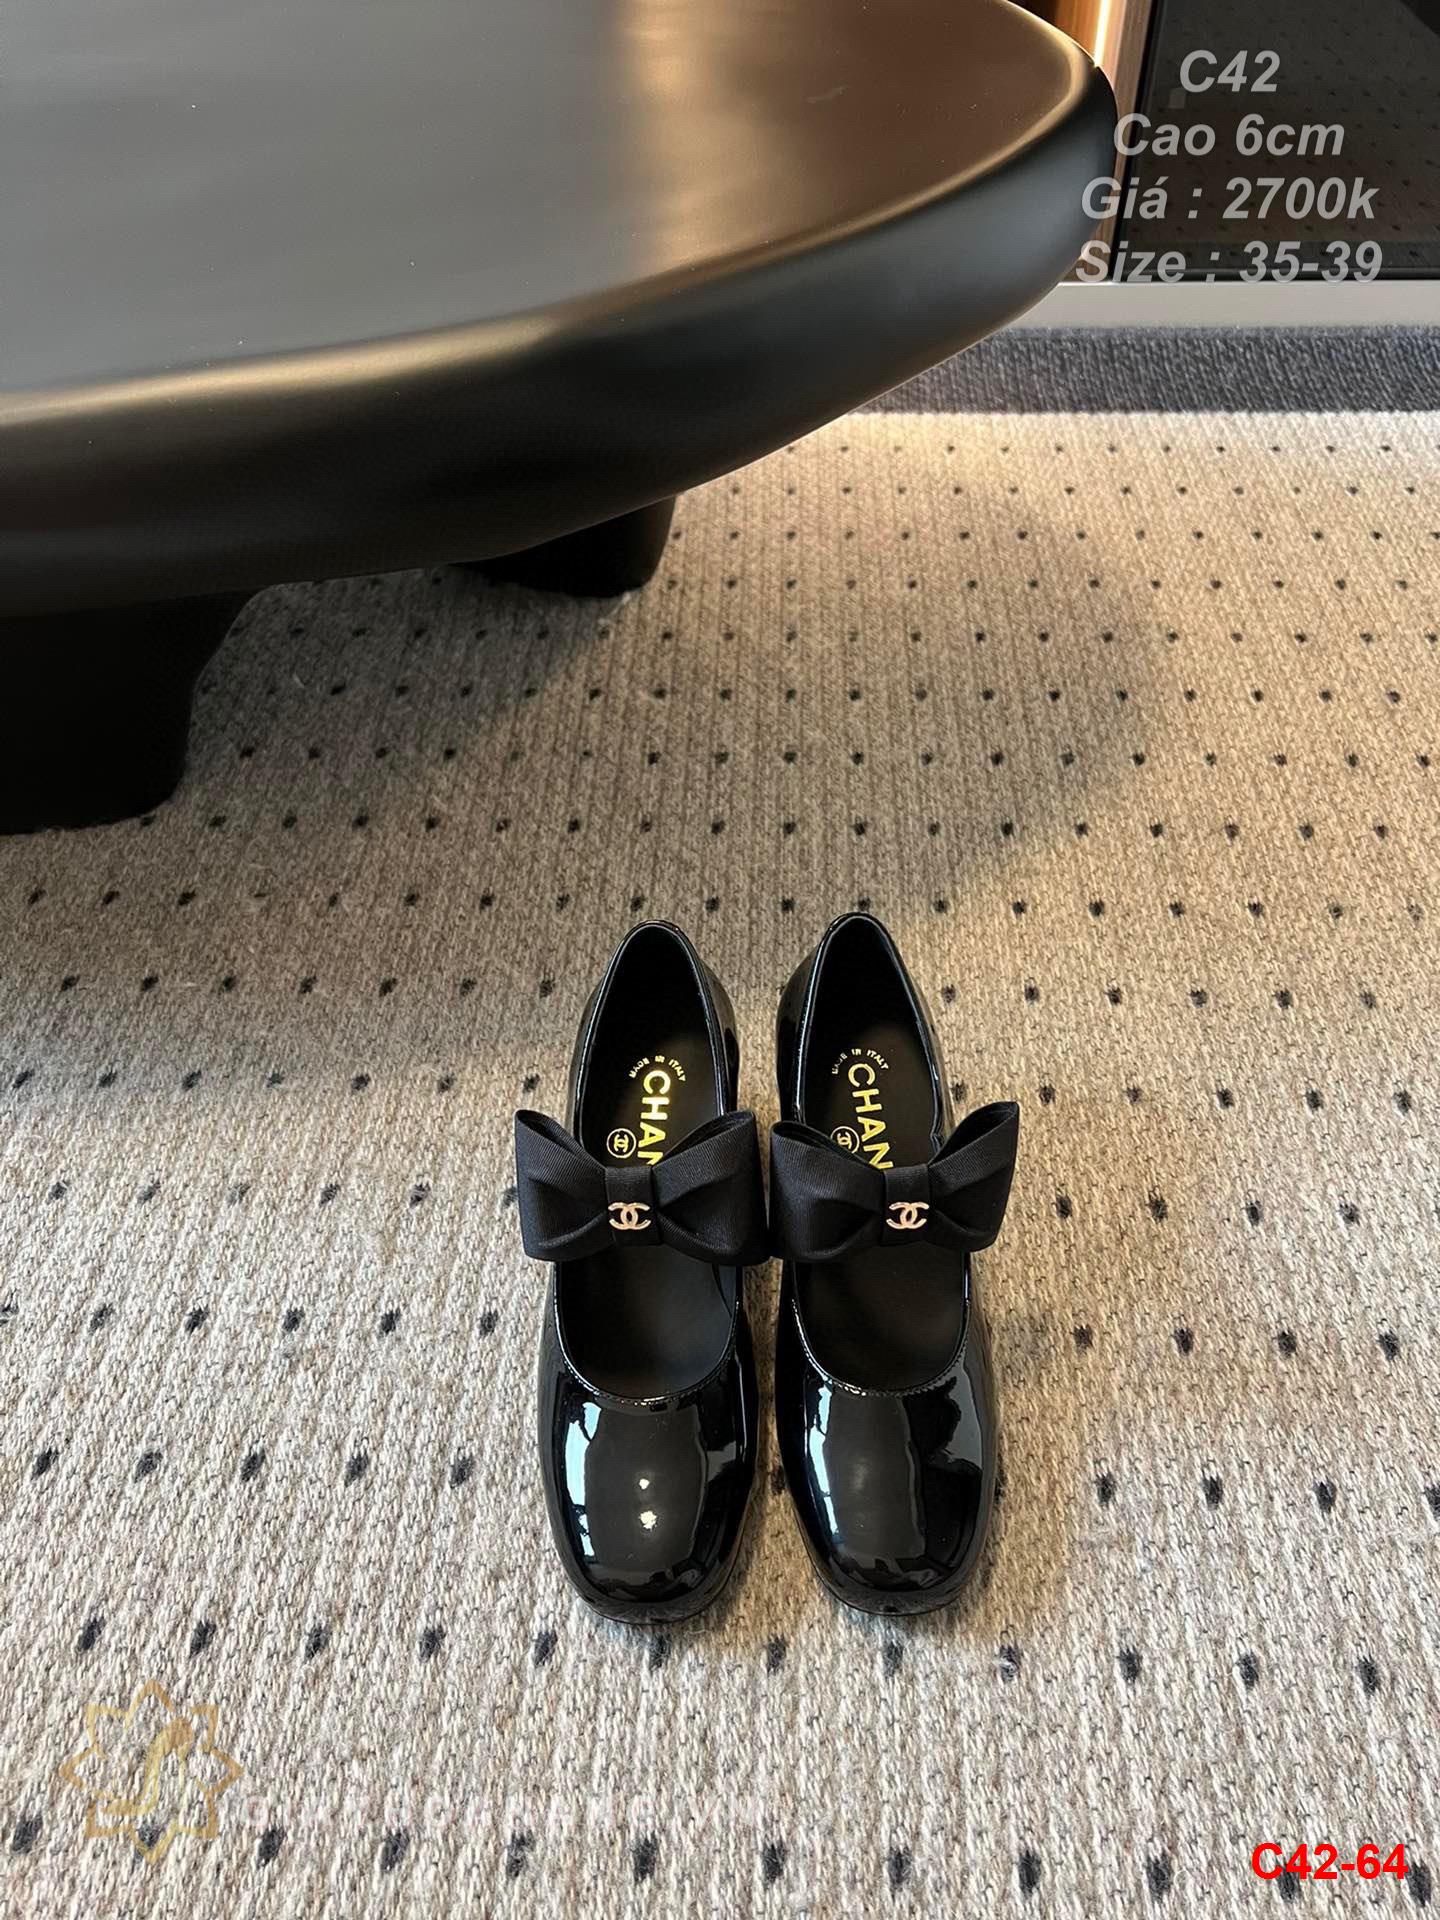 C42-64 Chanel giày cao 6cm siêu cấp